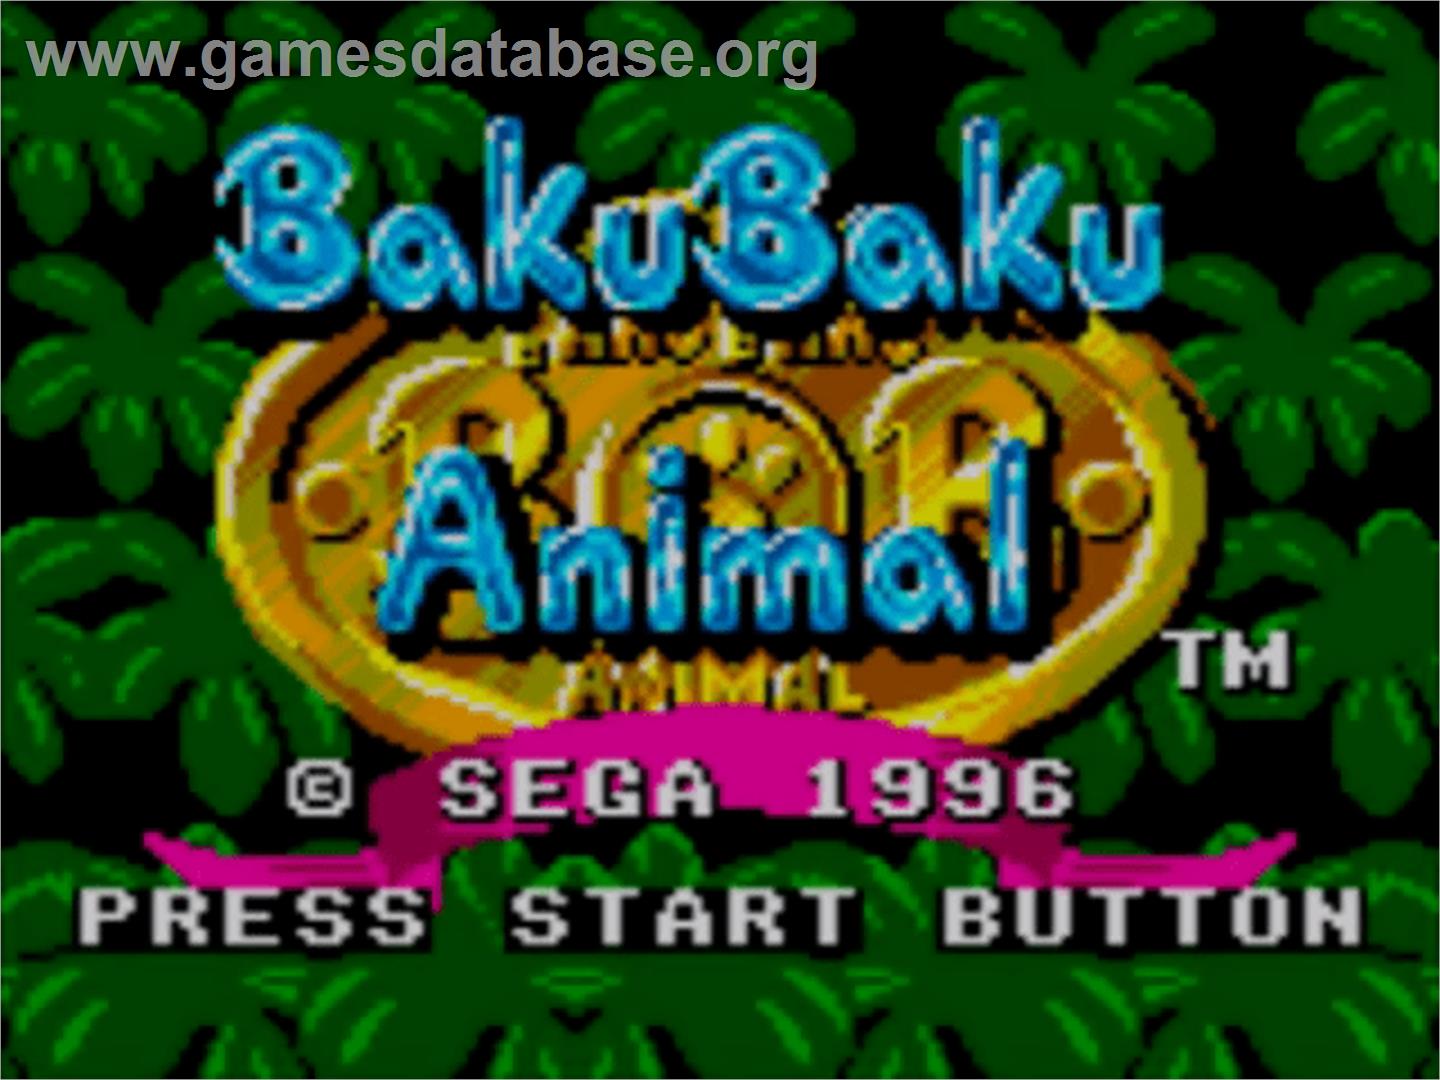 Baku Baku Animal - Sega Master System - Artwork - Title Screen